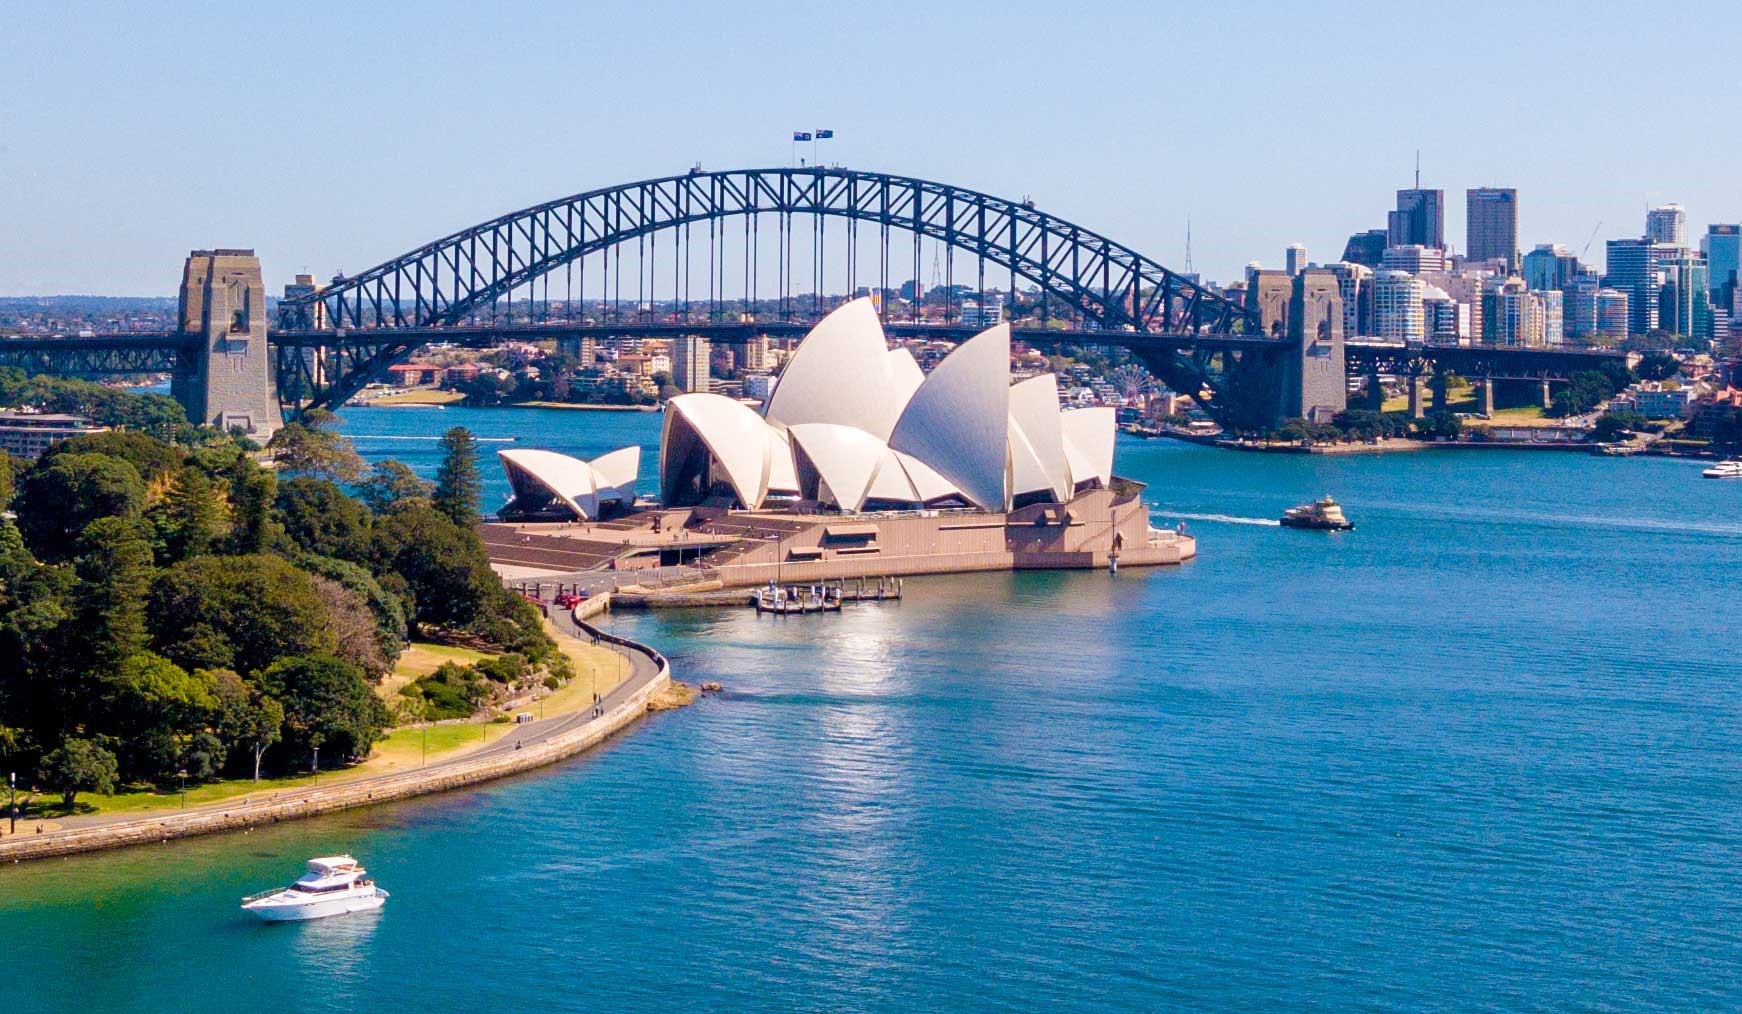 Сидней город какого государства. Сидней Роулетт. Сиднейский оперный театр и Харбор-бридж. Мост Харбор бридж и Сиднейский оперный театр в Австралии. Сидней столица.